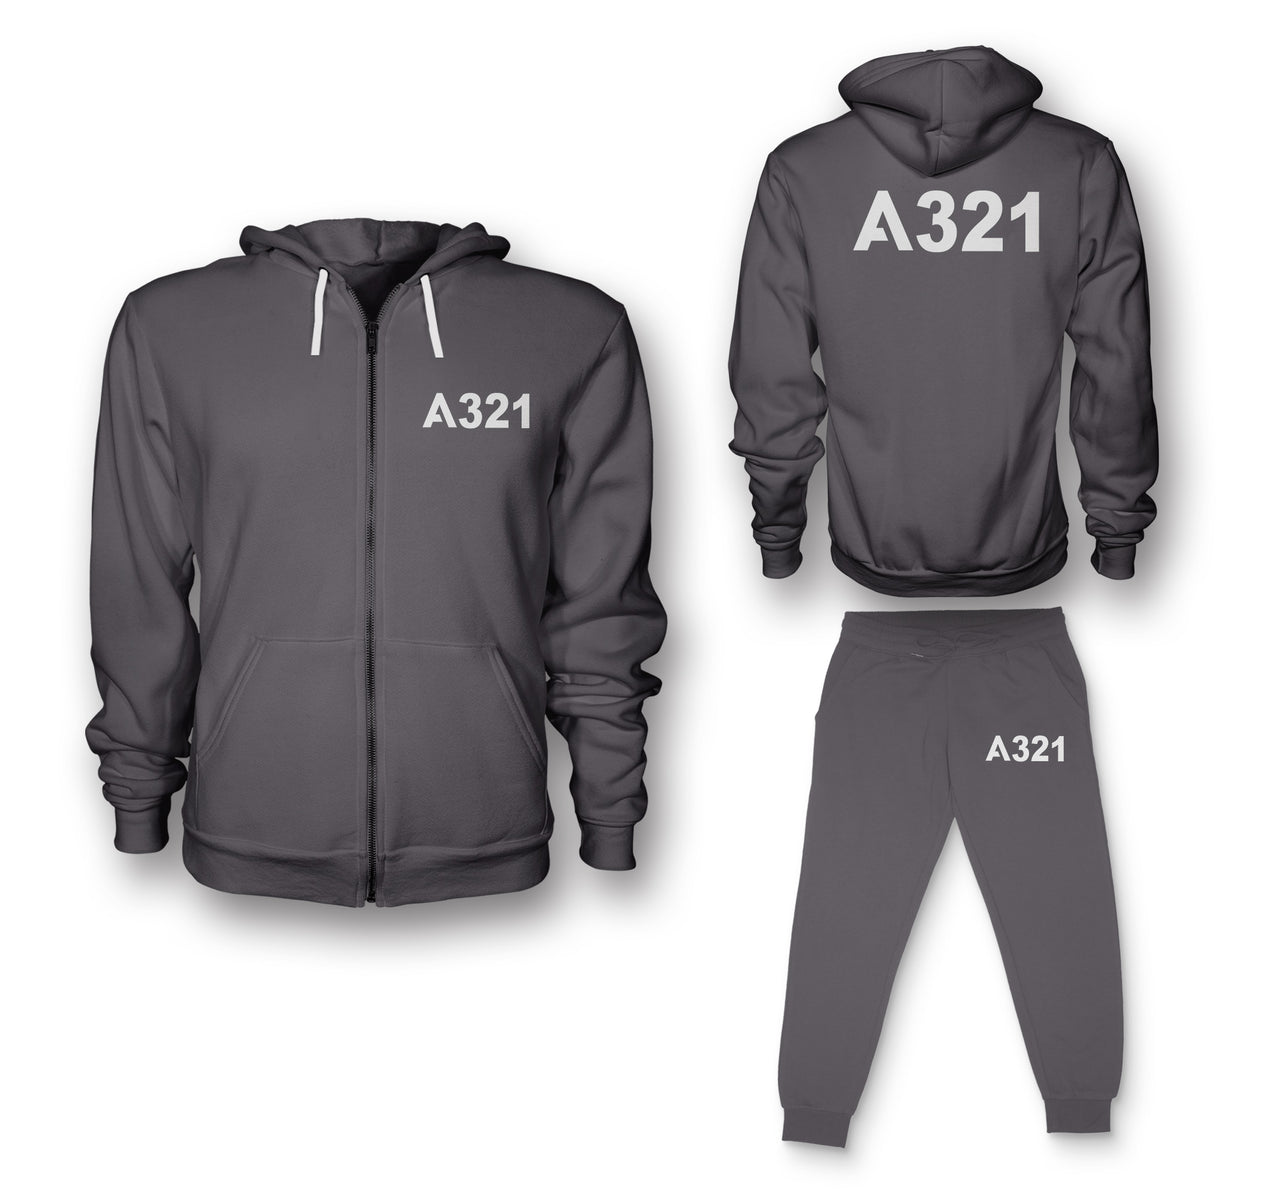 A321 Flat Text Designed Zipped Hoodies & Sweatpants Set